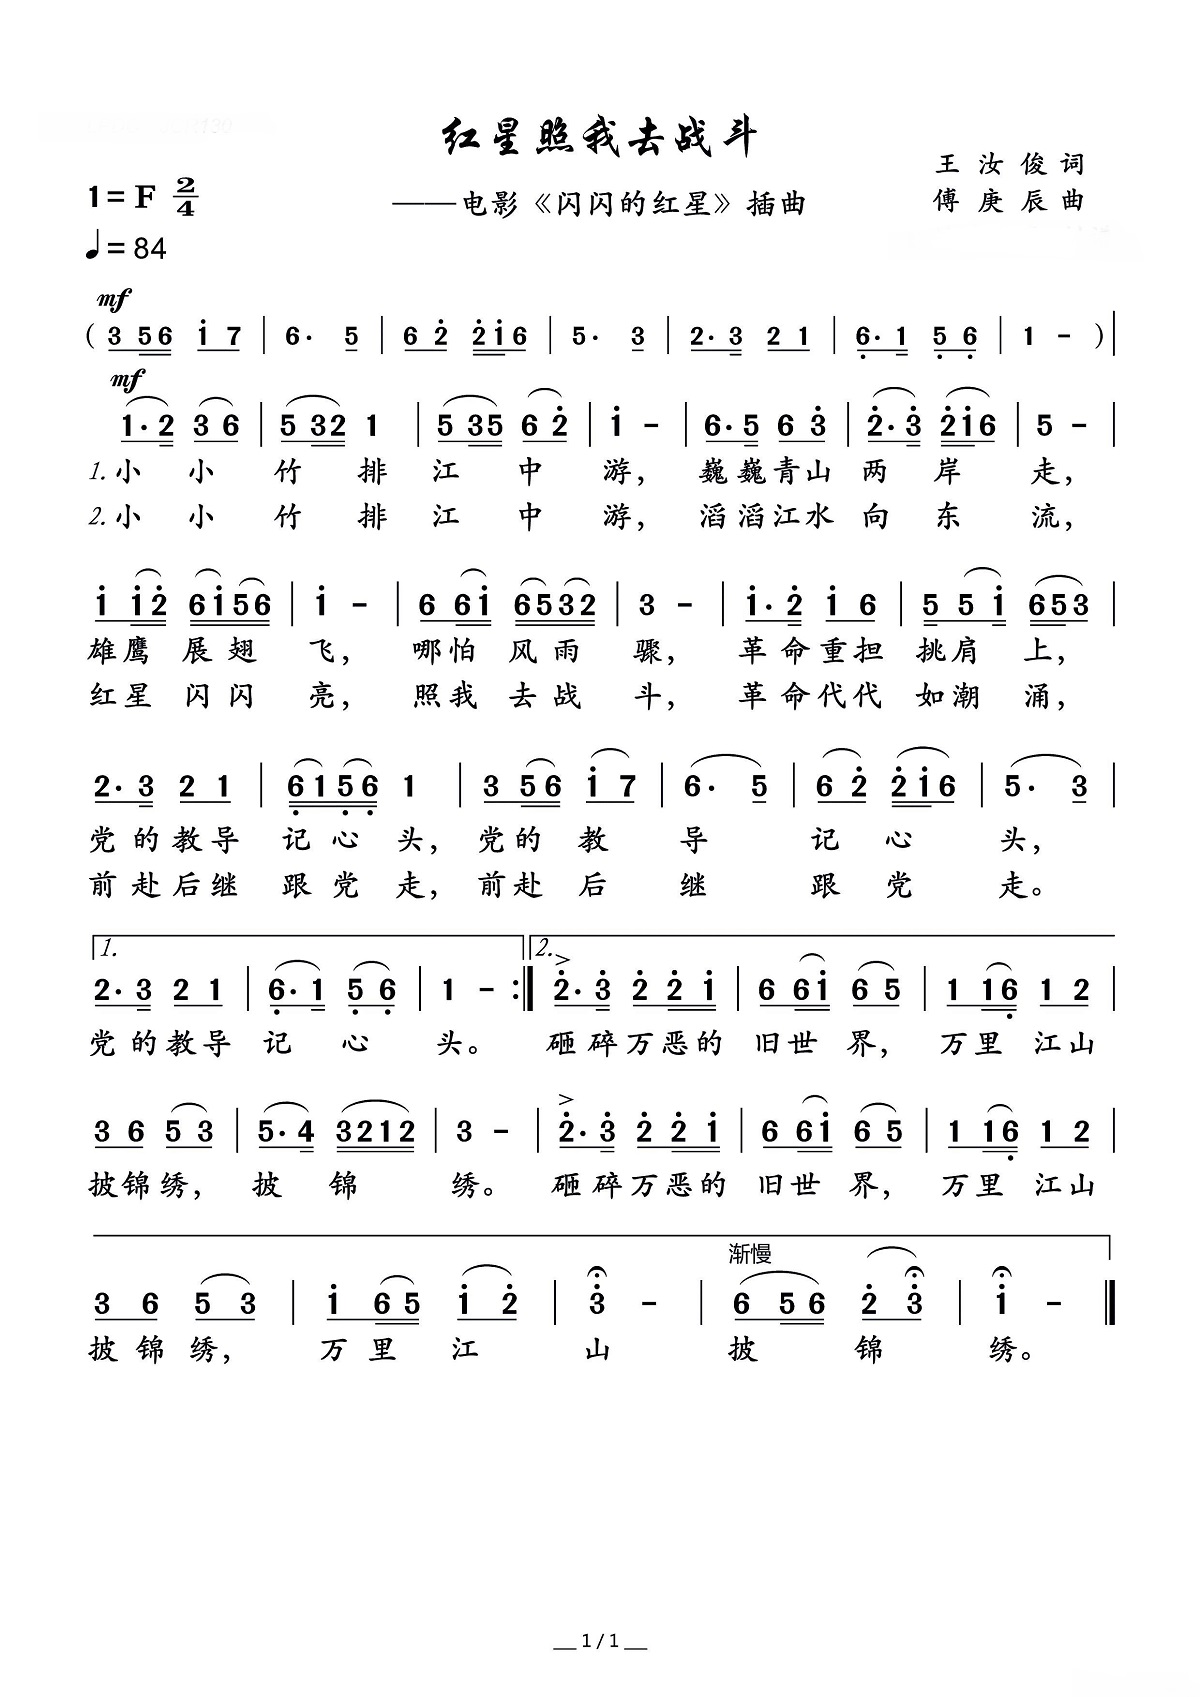 【红星照我去战斗】的简谱乐谱及歌词 – 李双江 (Li Shuangjiang)